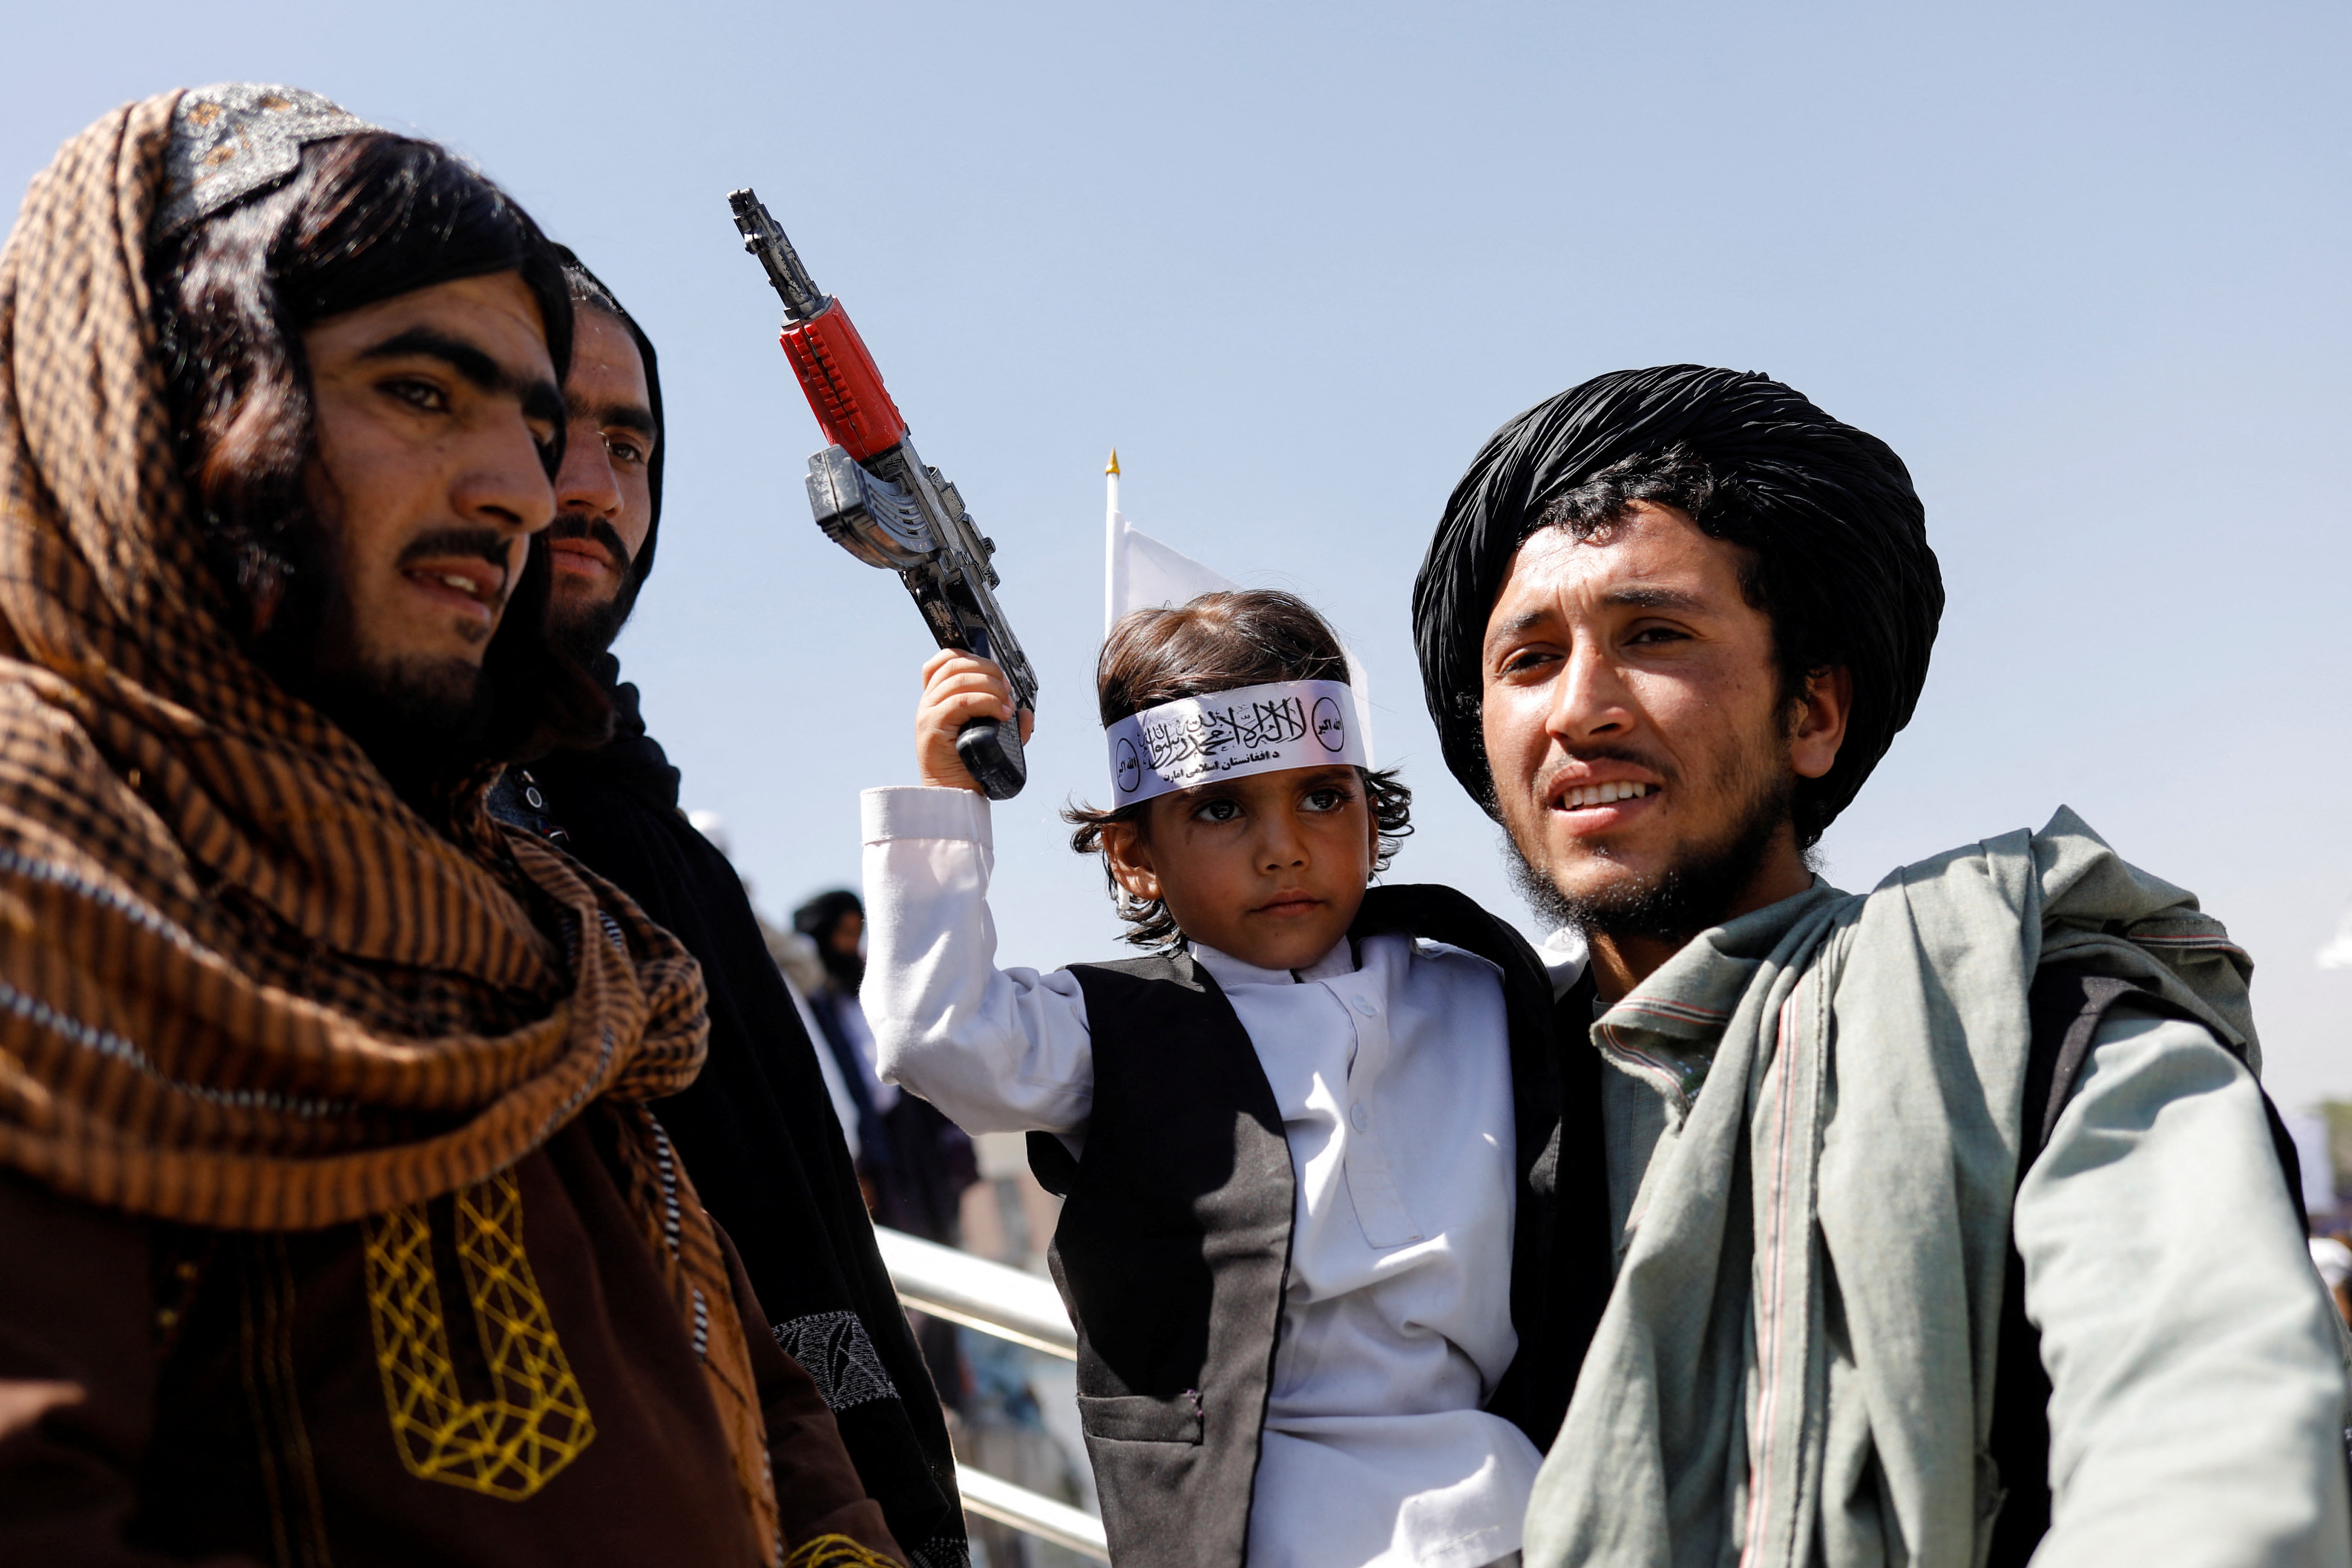 IG: 탈레반이 통제하는 아프가니스탄에서 바이든의 수십억 달러의 운명은 계산되지 않았습니다.